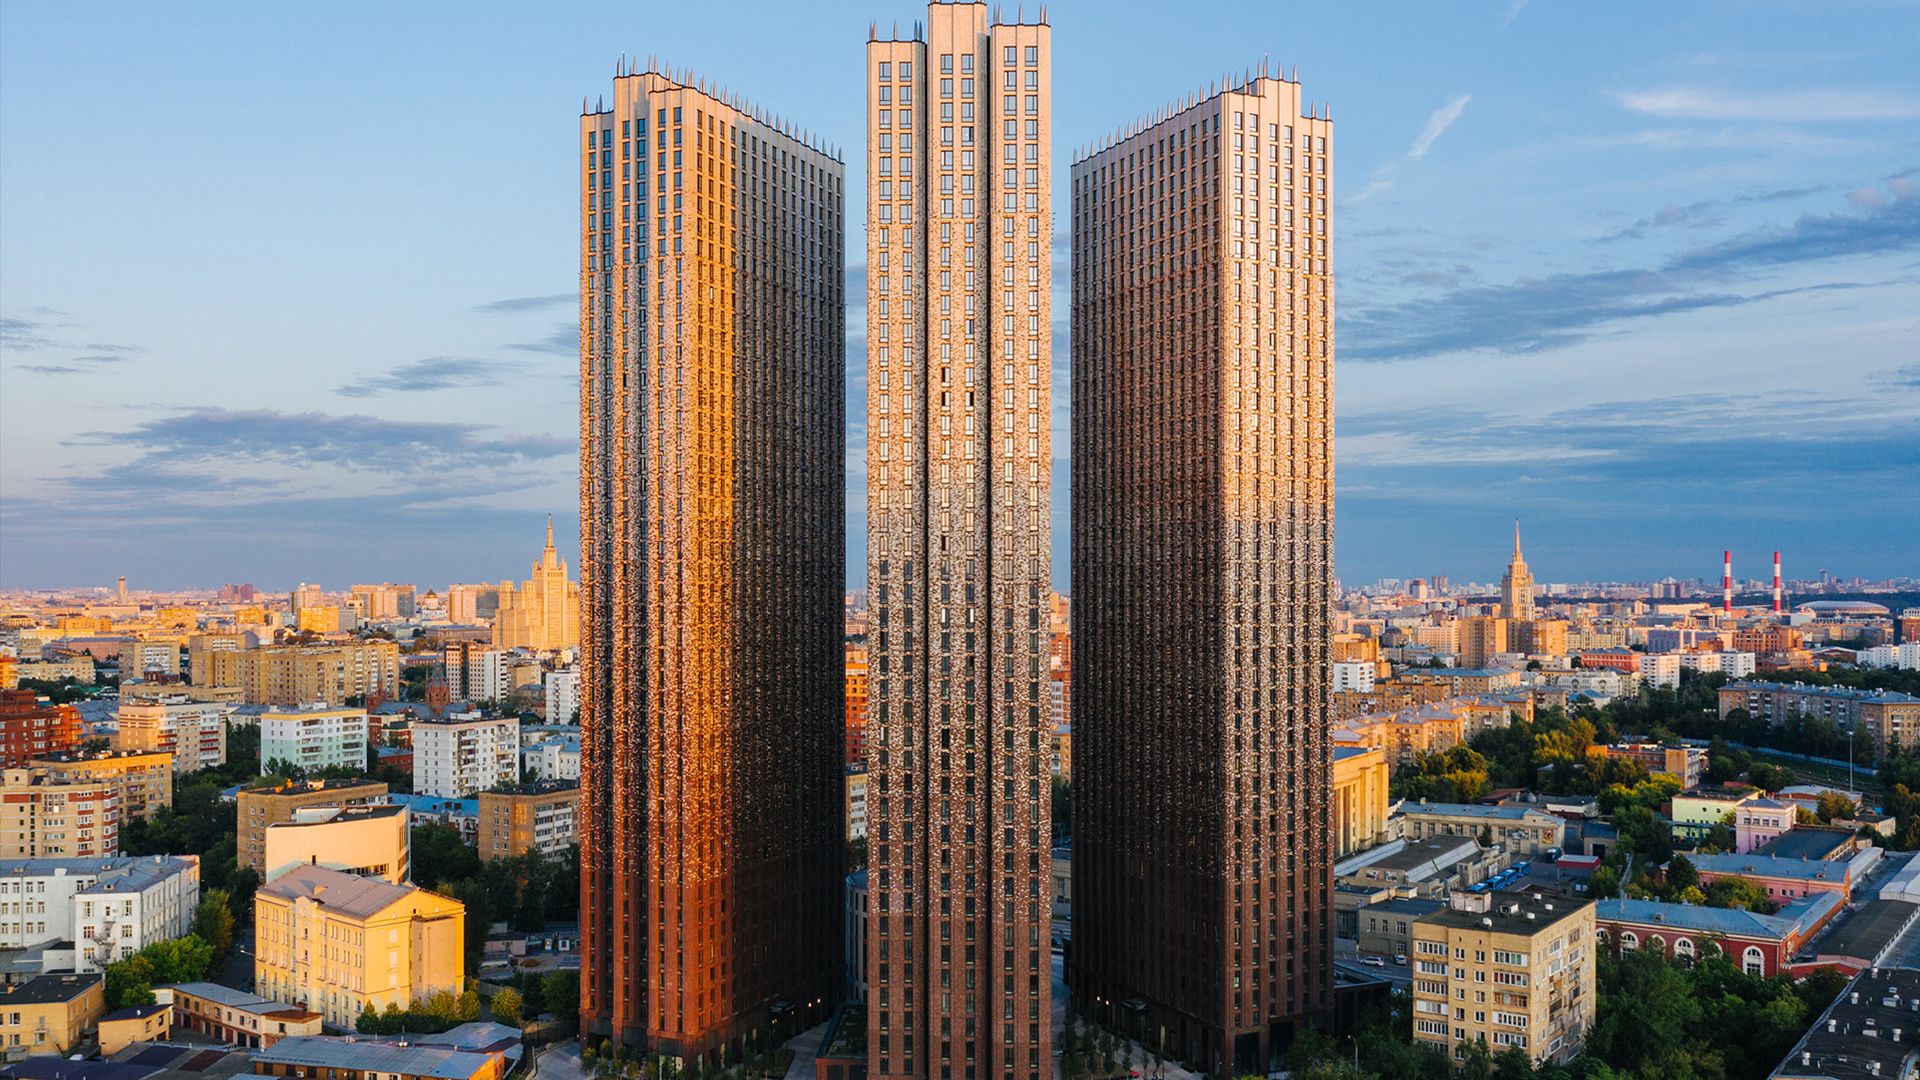 «Пресня Сити» — жилой комплекс бизнес-класса в нью-йоркском стиле высотой 44 этажа на 1594 апартамента.